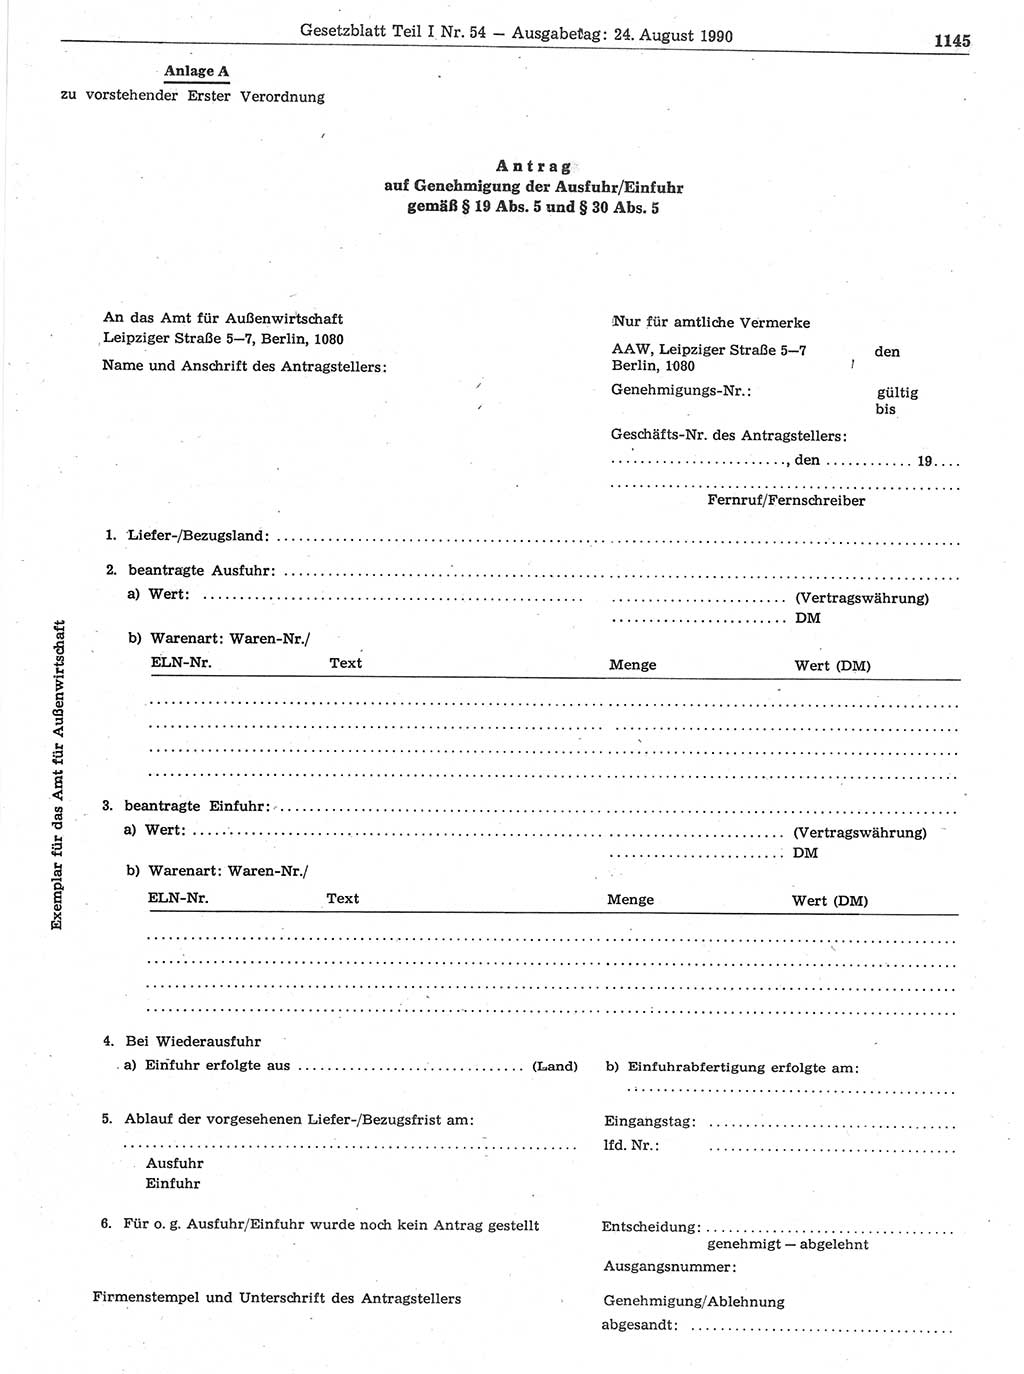 Gesetzblatt (GBl.) der Deutschen Demokratischen Republik (DDR) Teil Ⅰ 1990, Seite 1145 (GBl. DDR Ⅰ 1990, S. 1145)